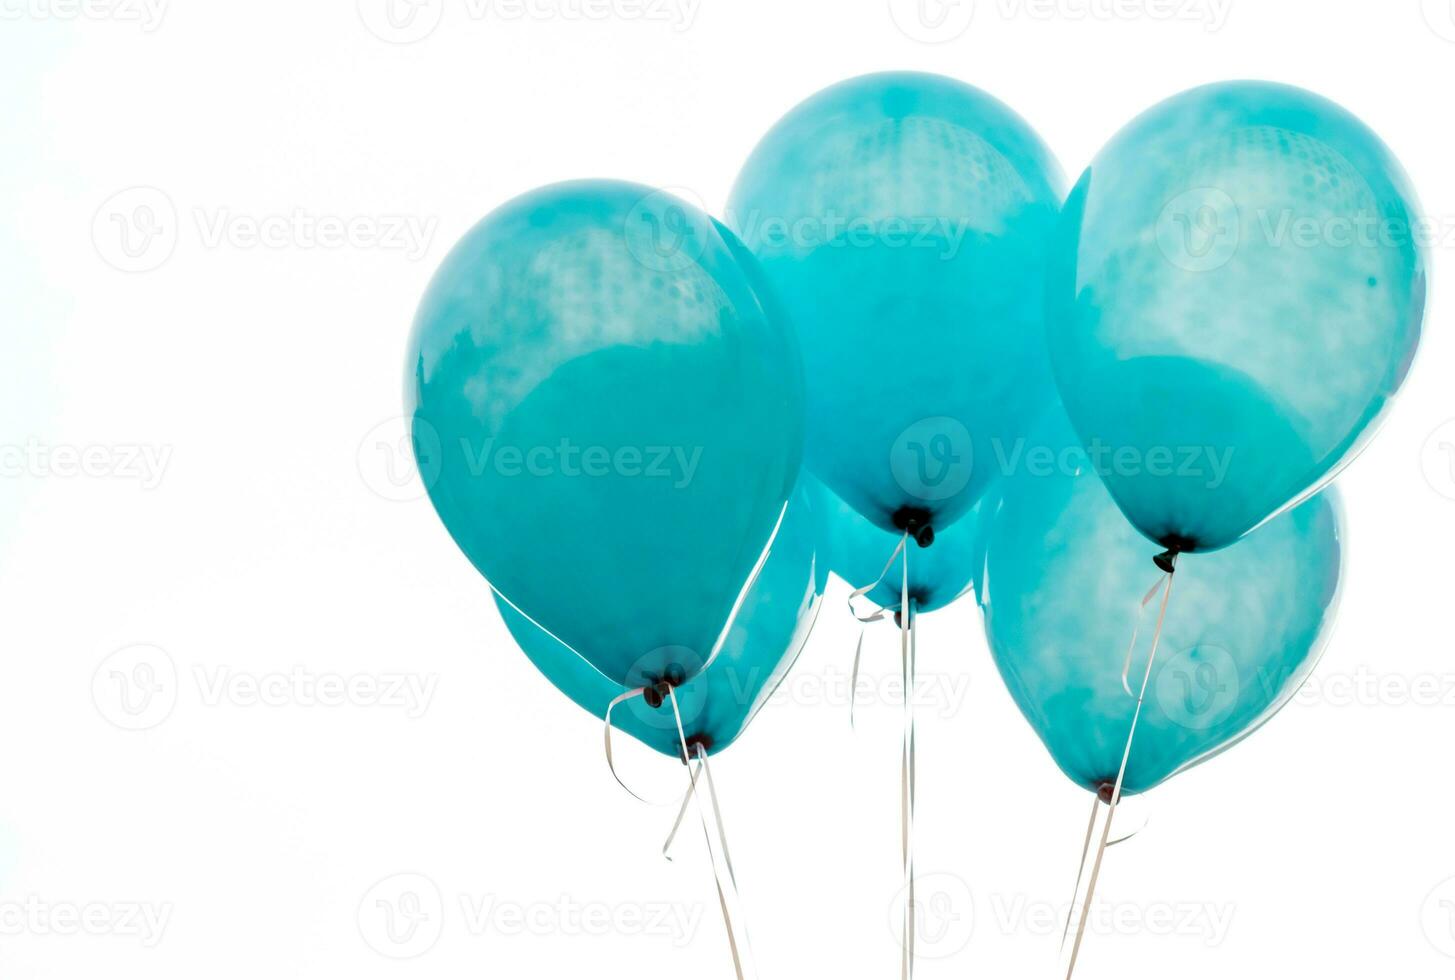 Textur auf der Oberfläche des blauen Ballons foto